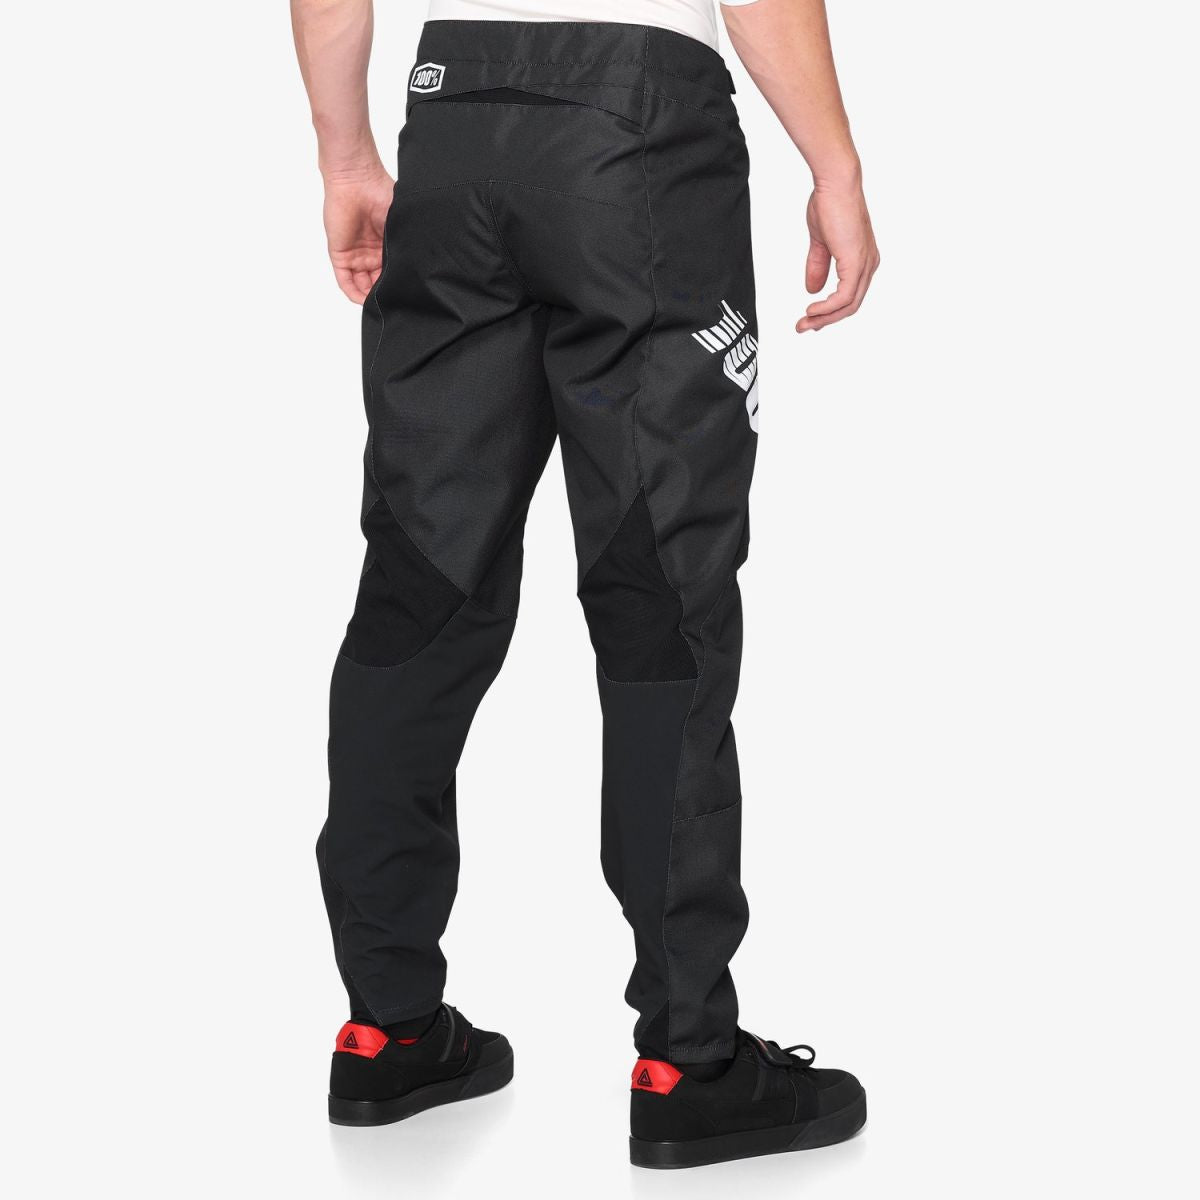 100% R-Core Black Pantalon - Tienda Ride